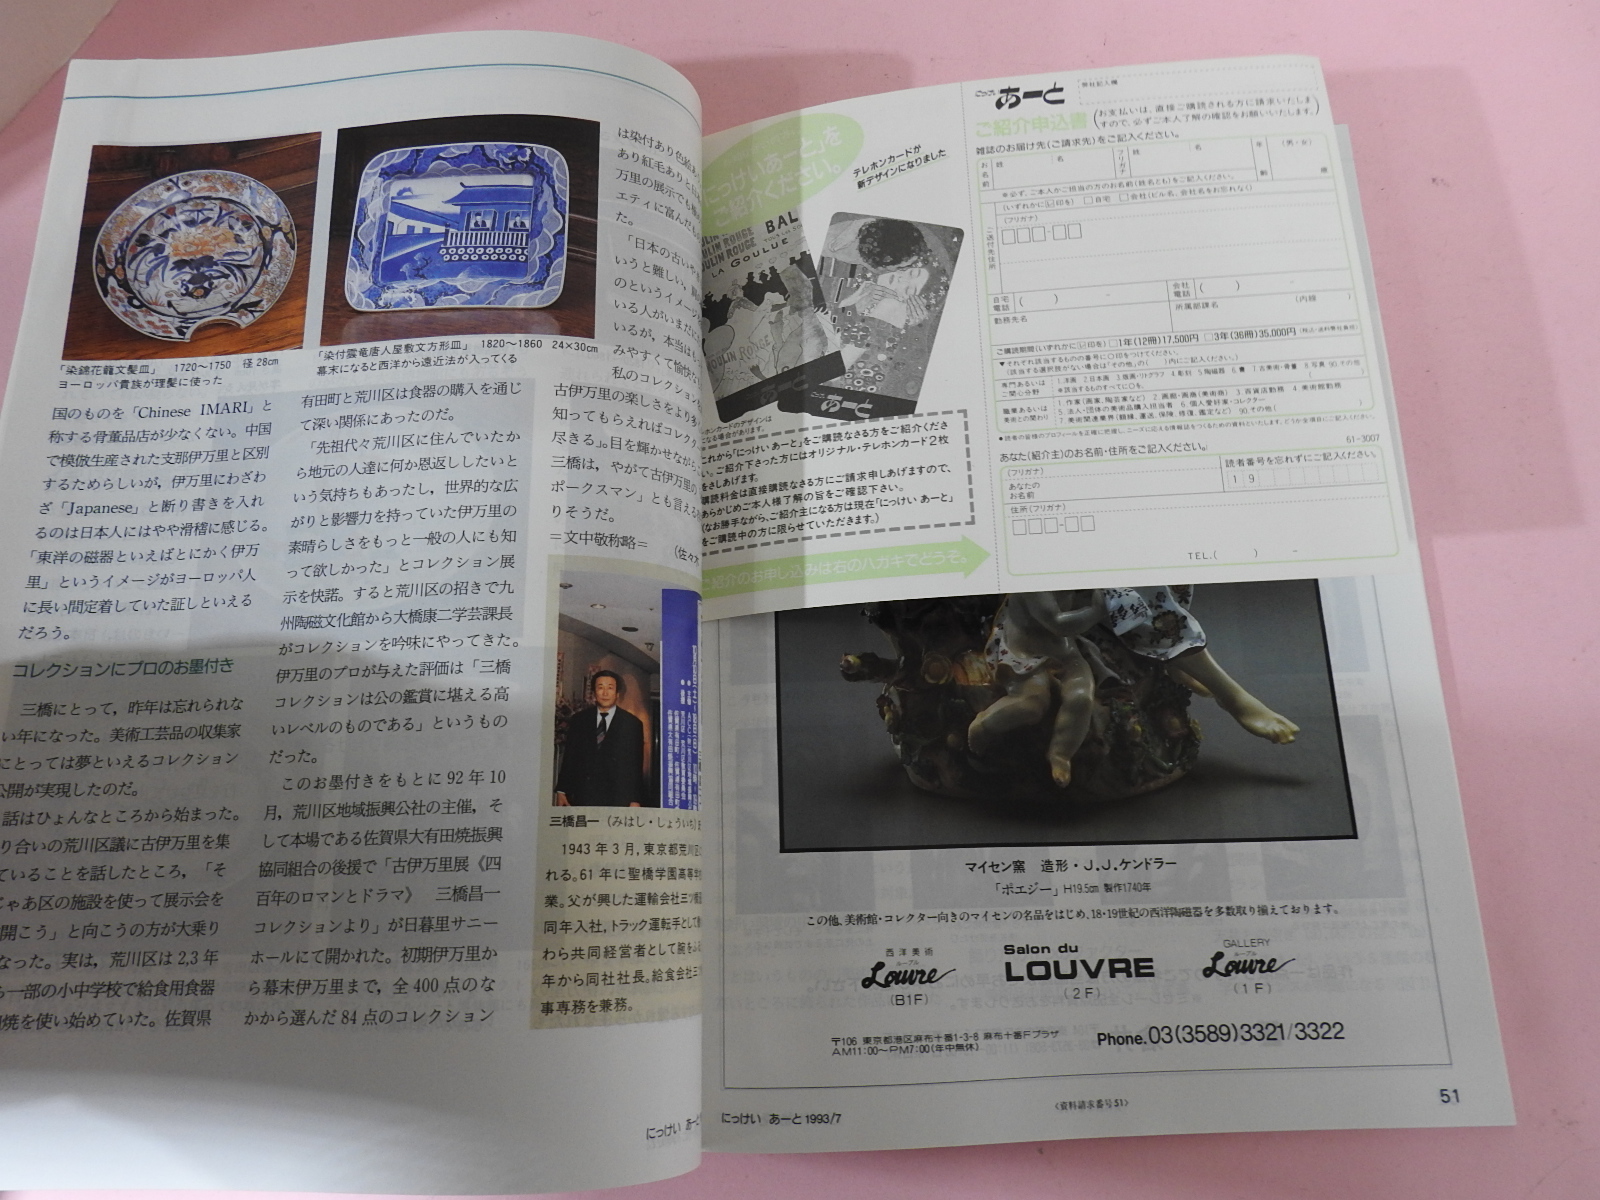 1993년 일본미술잡지